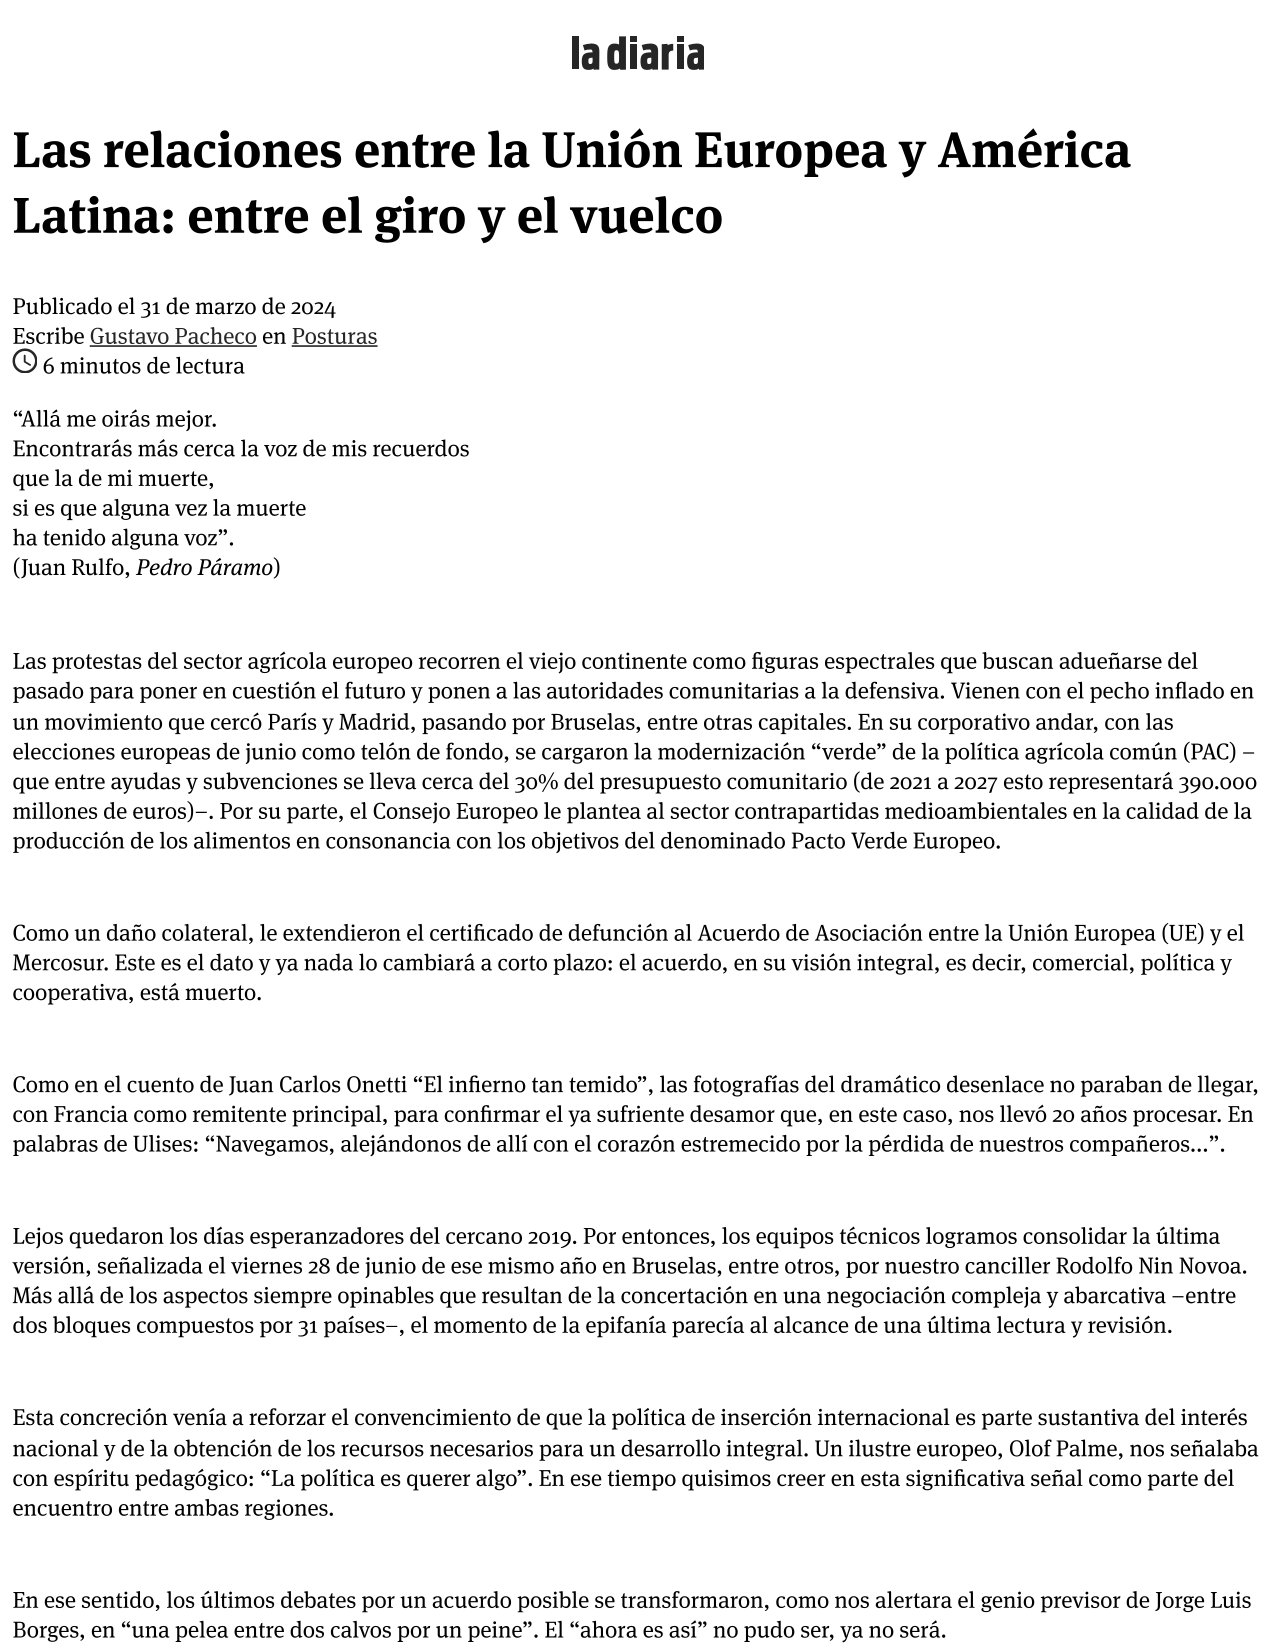 Las relaciones entre la UE y América Latina: entre el giro y el vuelco, marzo 2024.